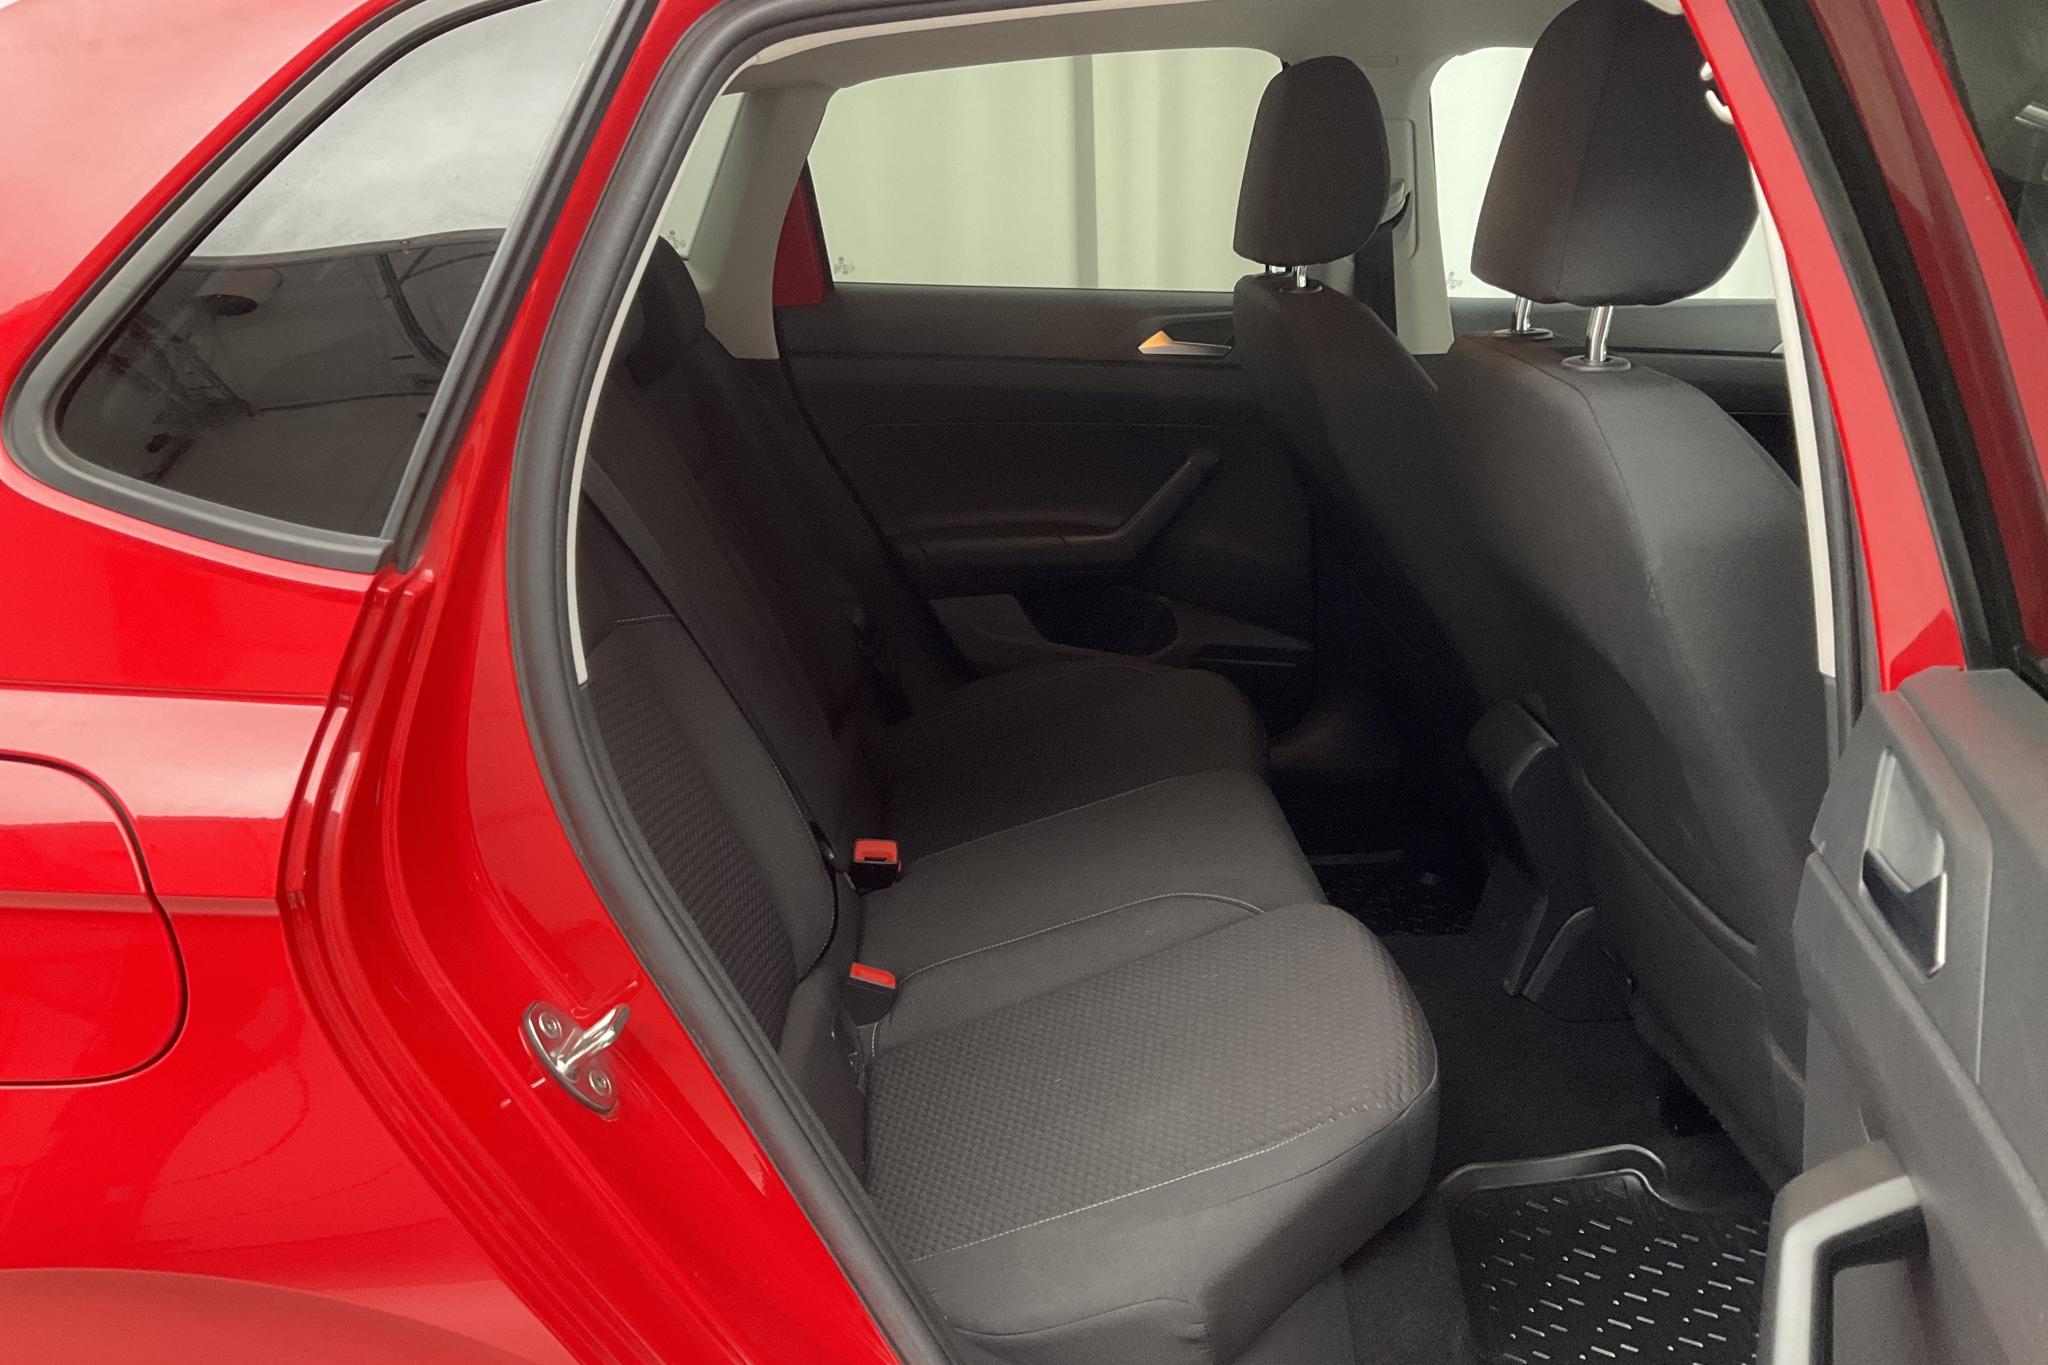 VW Polo 1.0 TSI 5dr (95hk) - 66 650 km - Manual - red - 2018